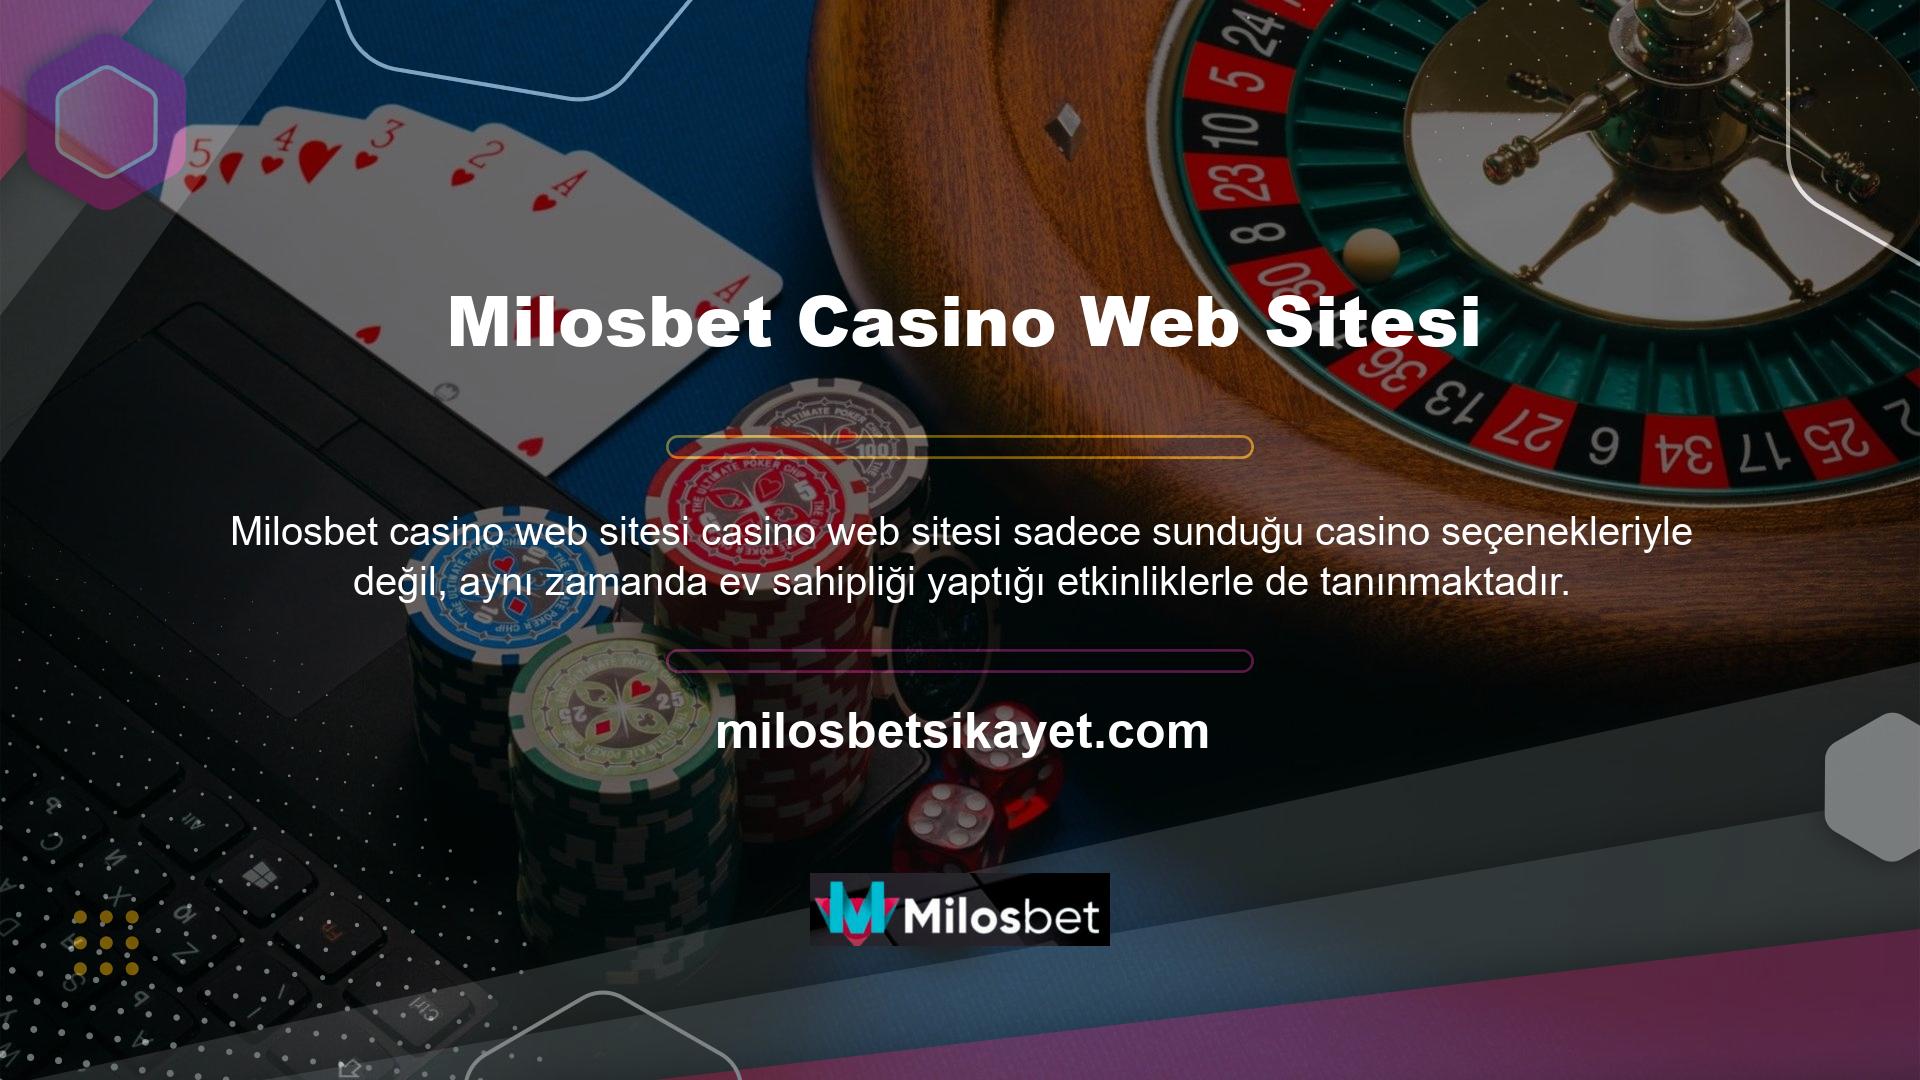 Milosbet casino sitesinde bahis oynamak da bingonun bu konuda oldukça aktif olduğunu gösteriyor